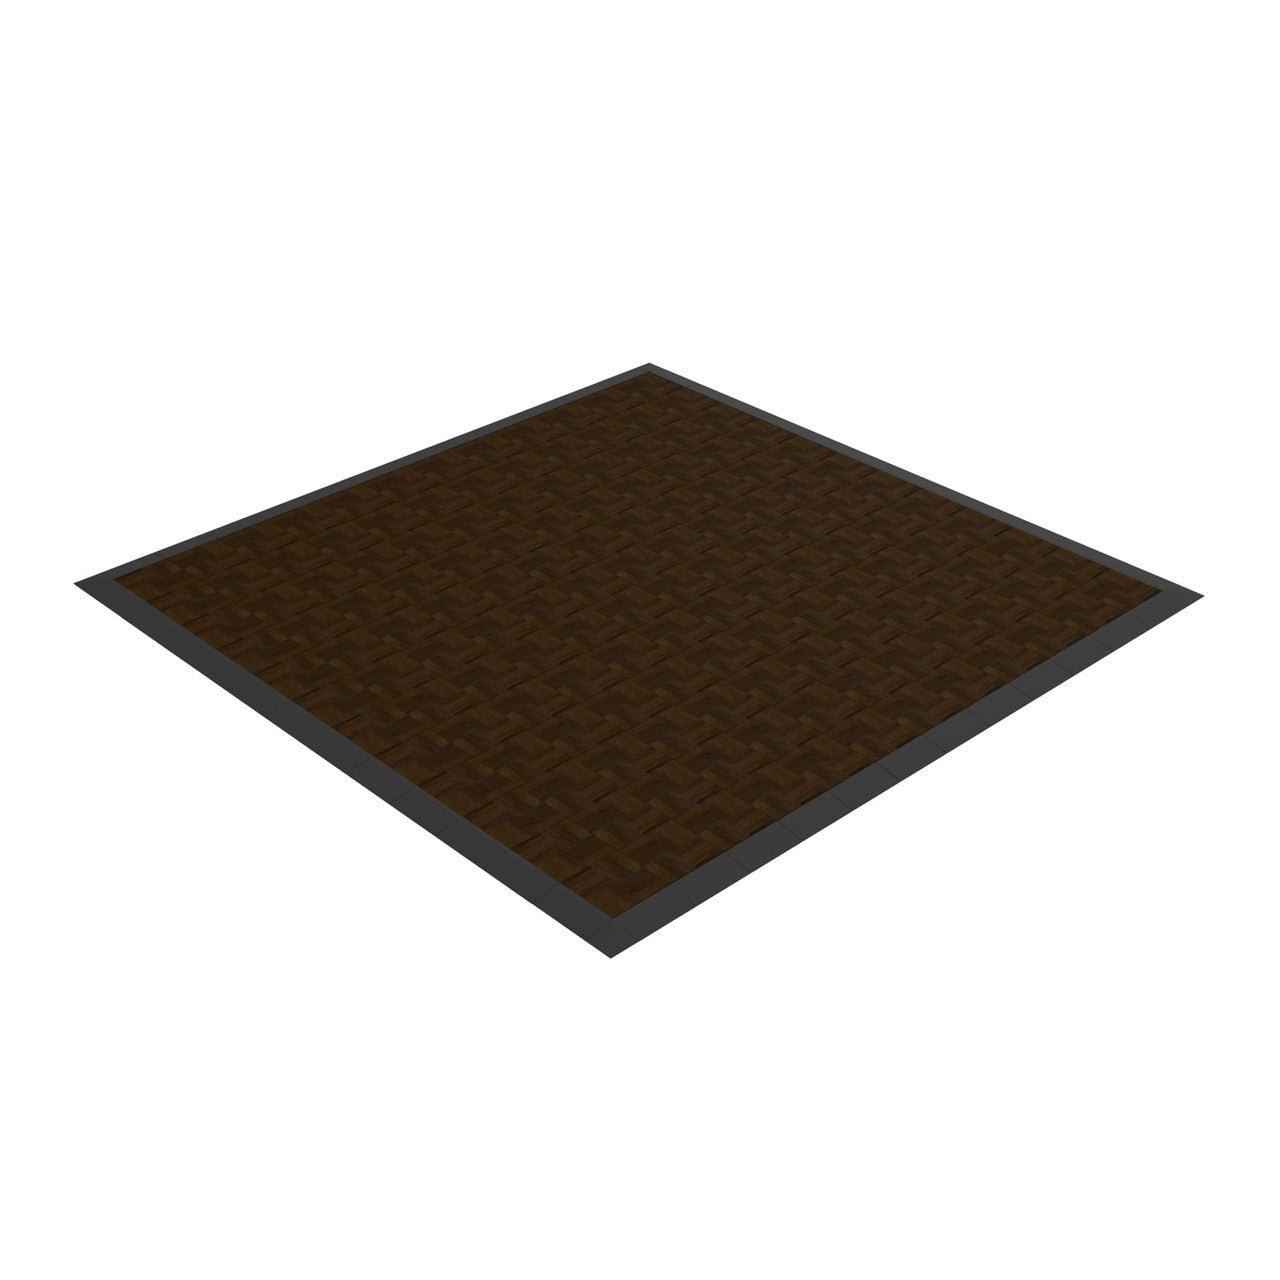 Modular Dance Flooring Tile 12" x 12" (Floor Package) - SchoolOutlet